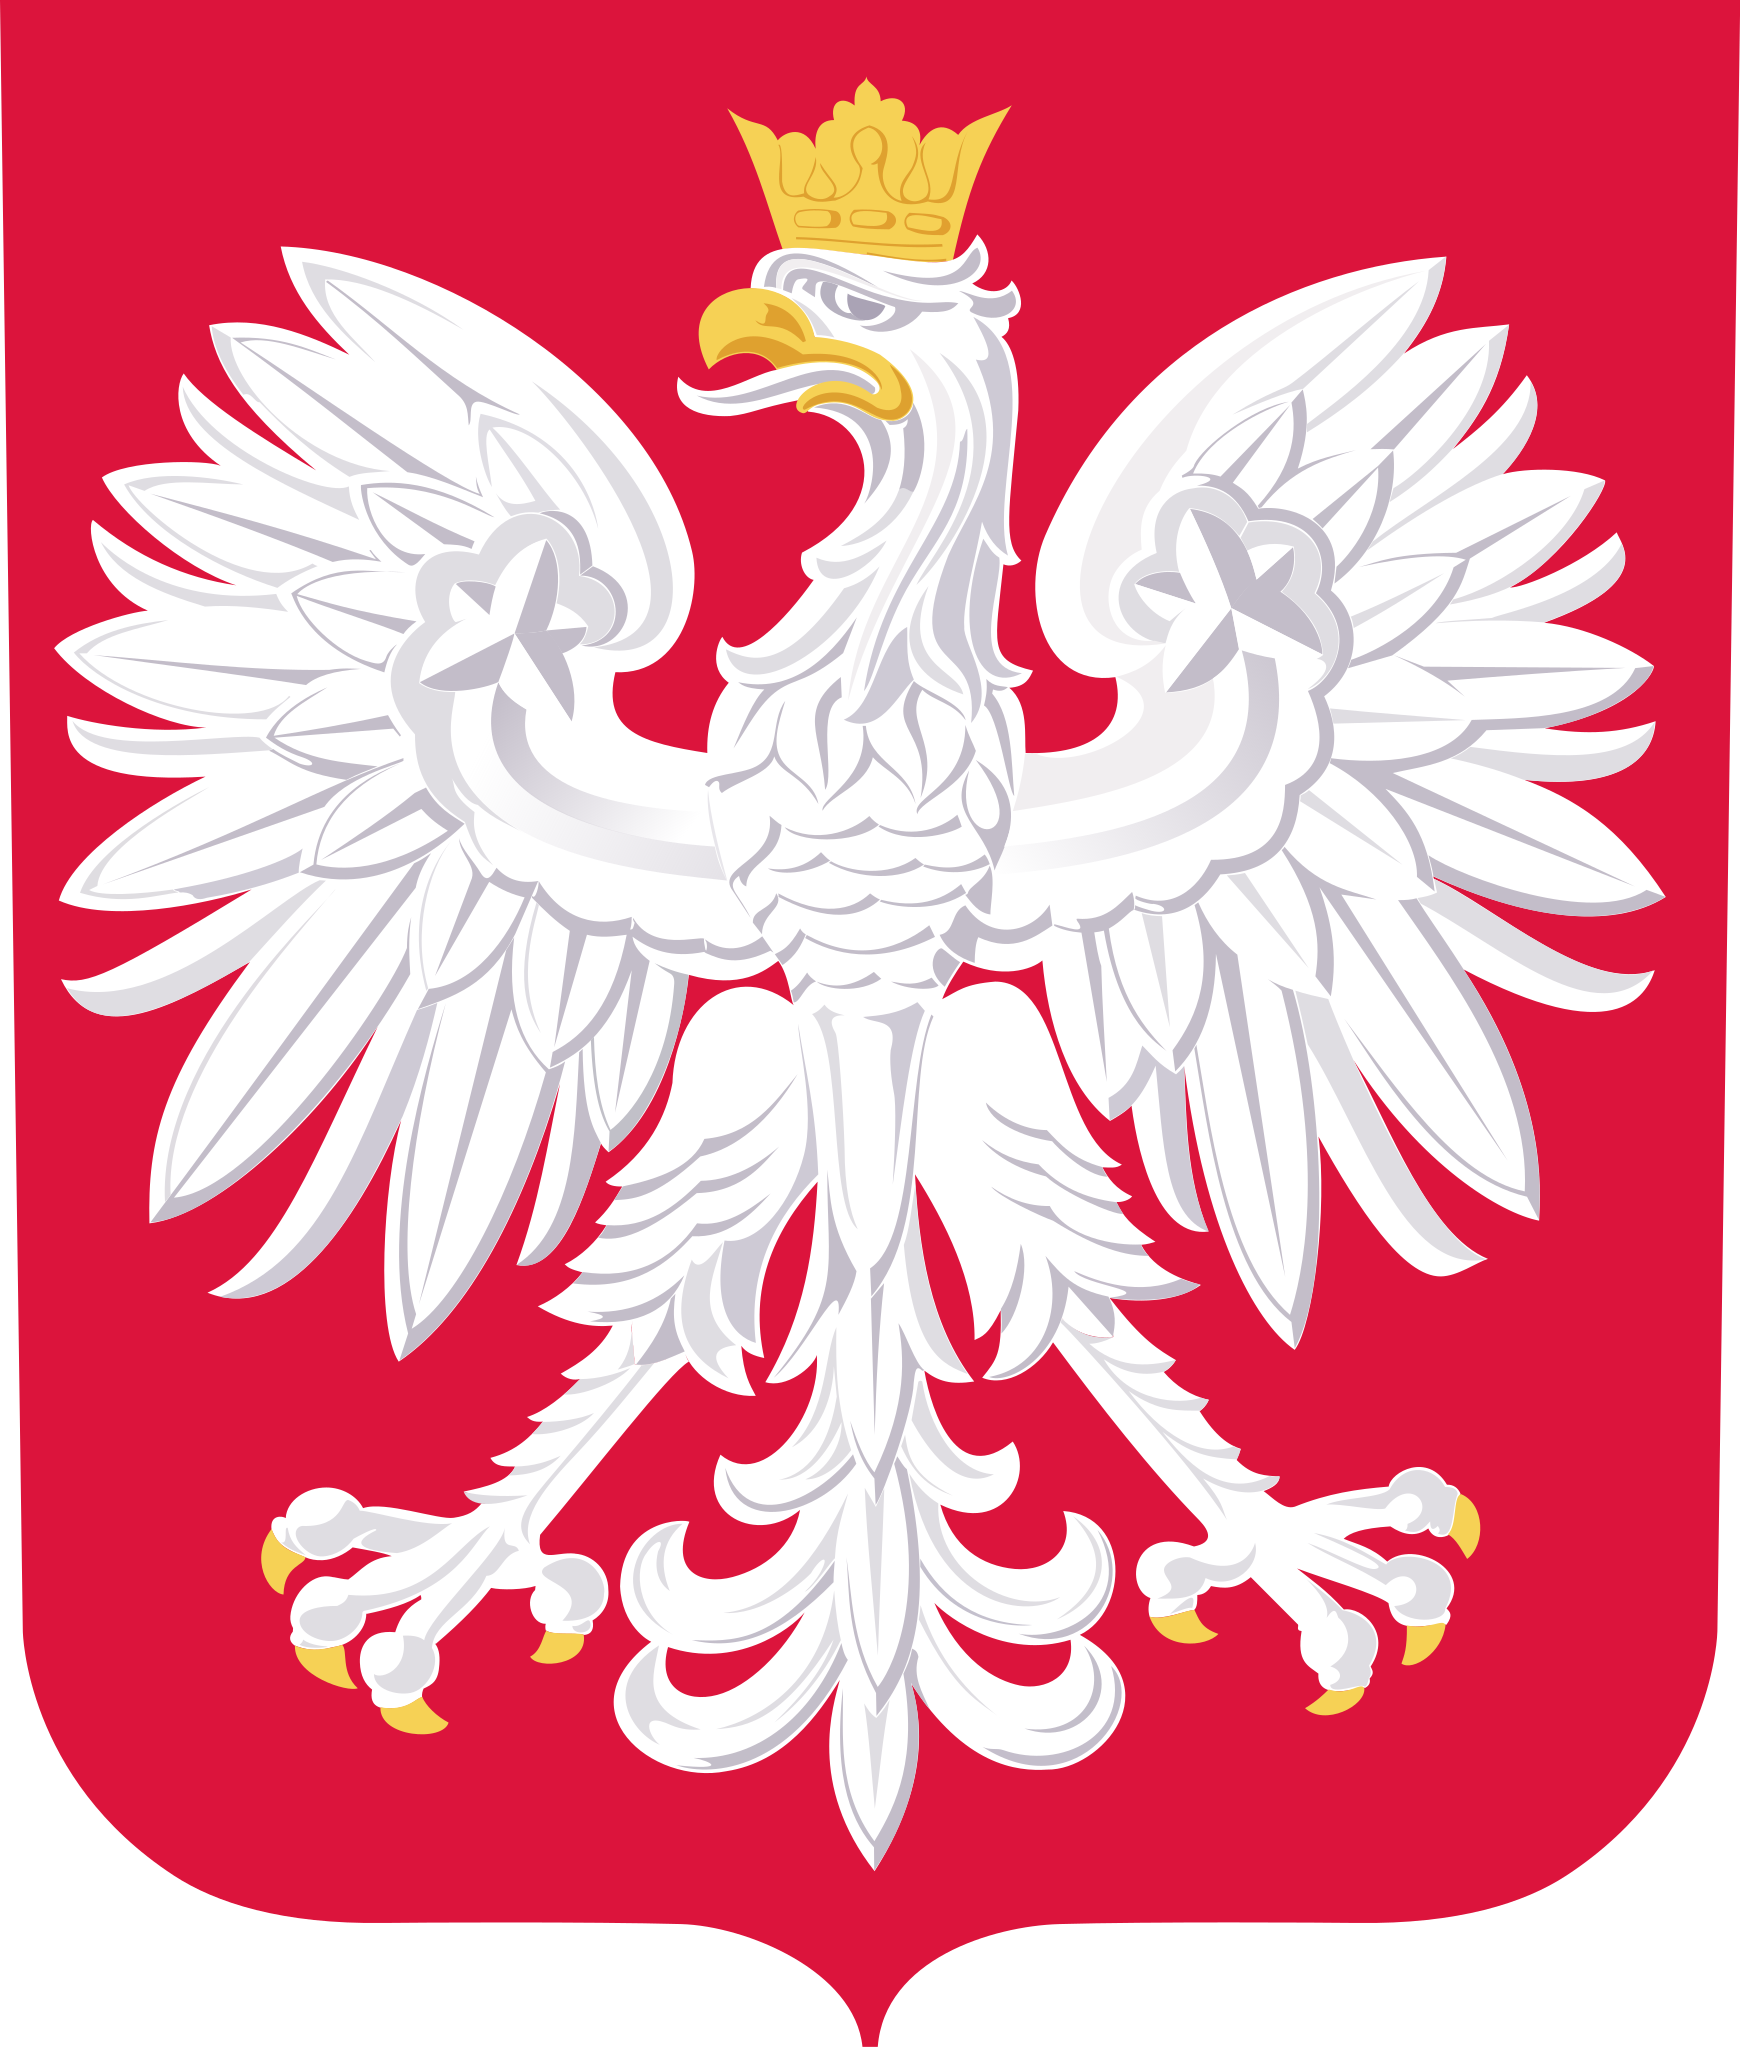 Sąd Rejonowy Poznań Stare Miasto